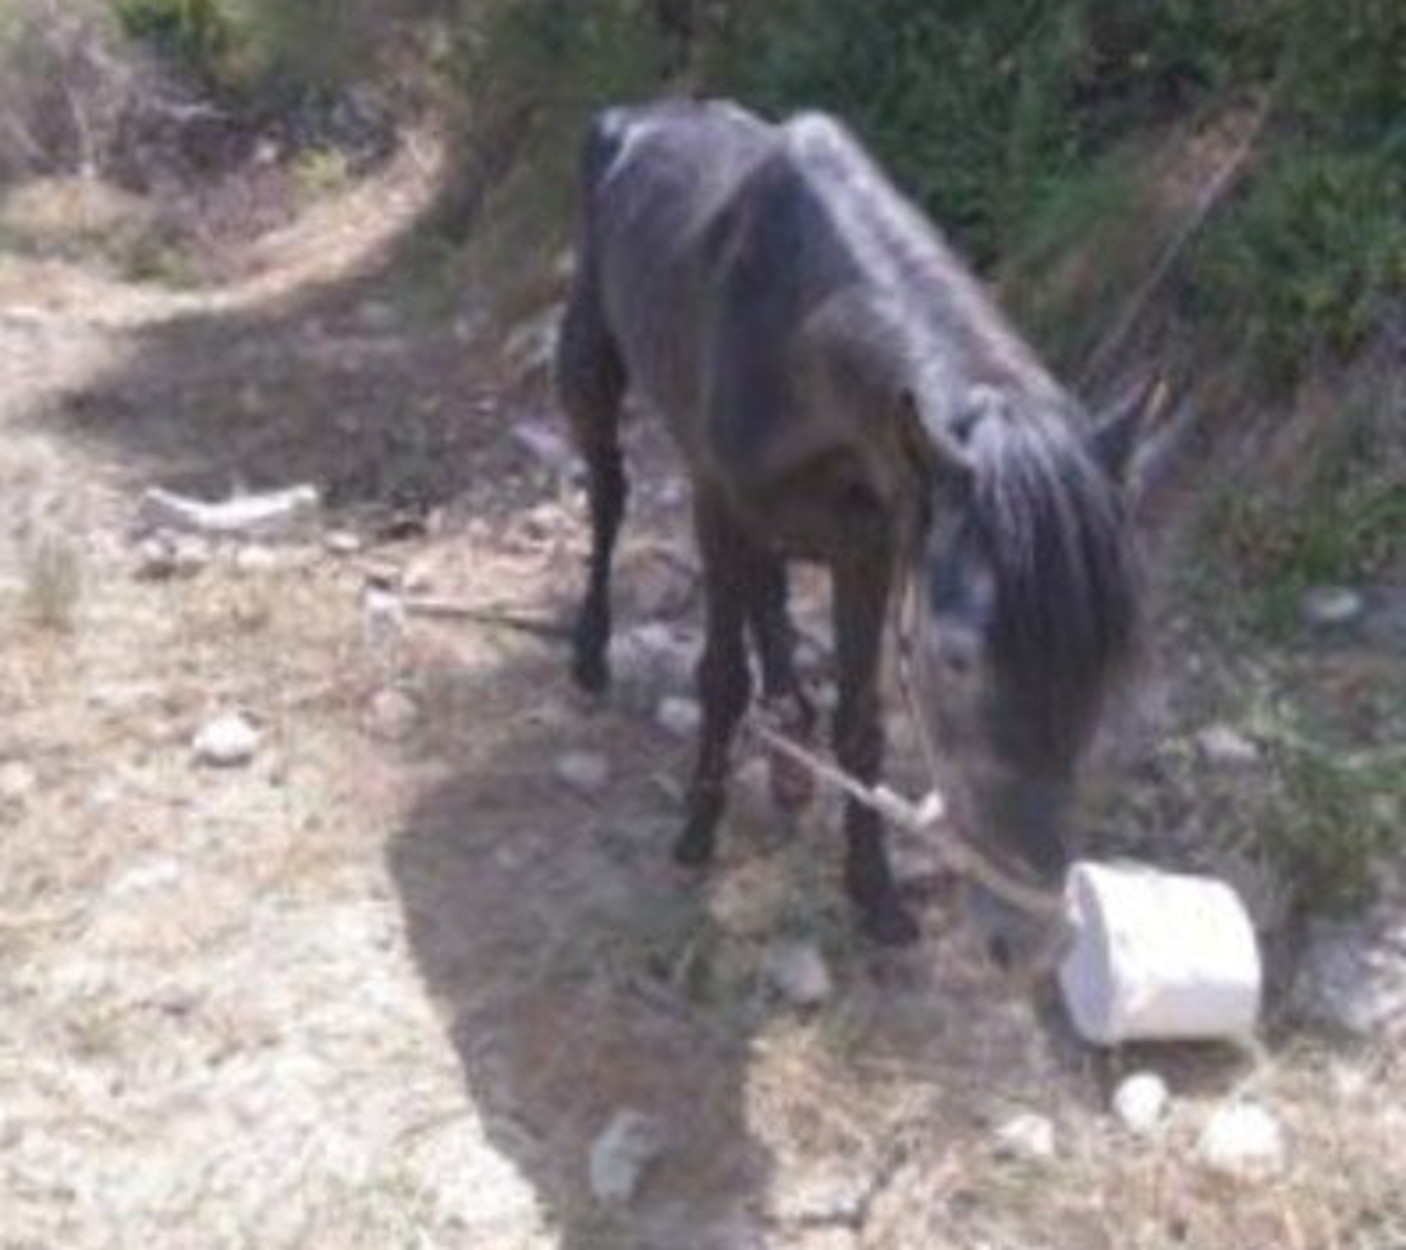 Ηράκλειο: Ψευτόμαγκας βασάνιζε το άλογό του και του έκοψε το πόδι! Σκληρές εικόνες